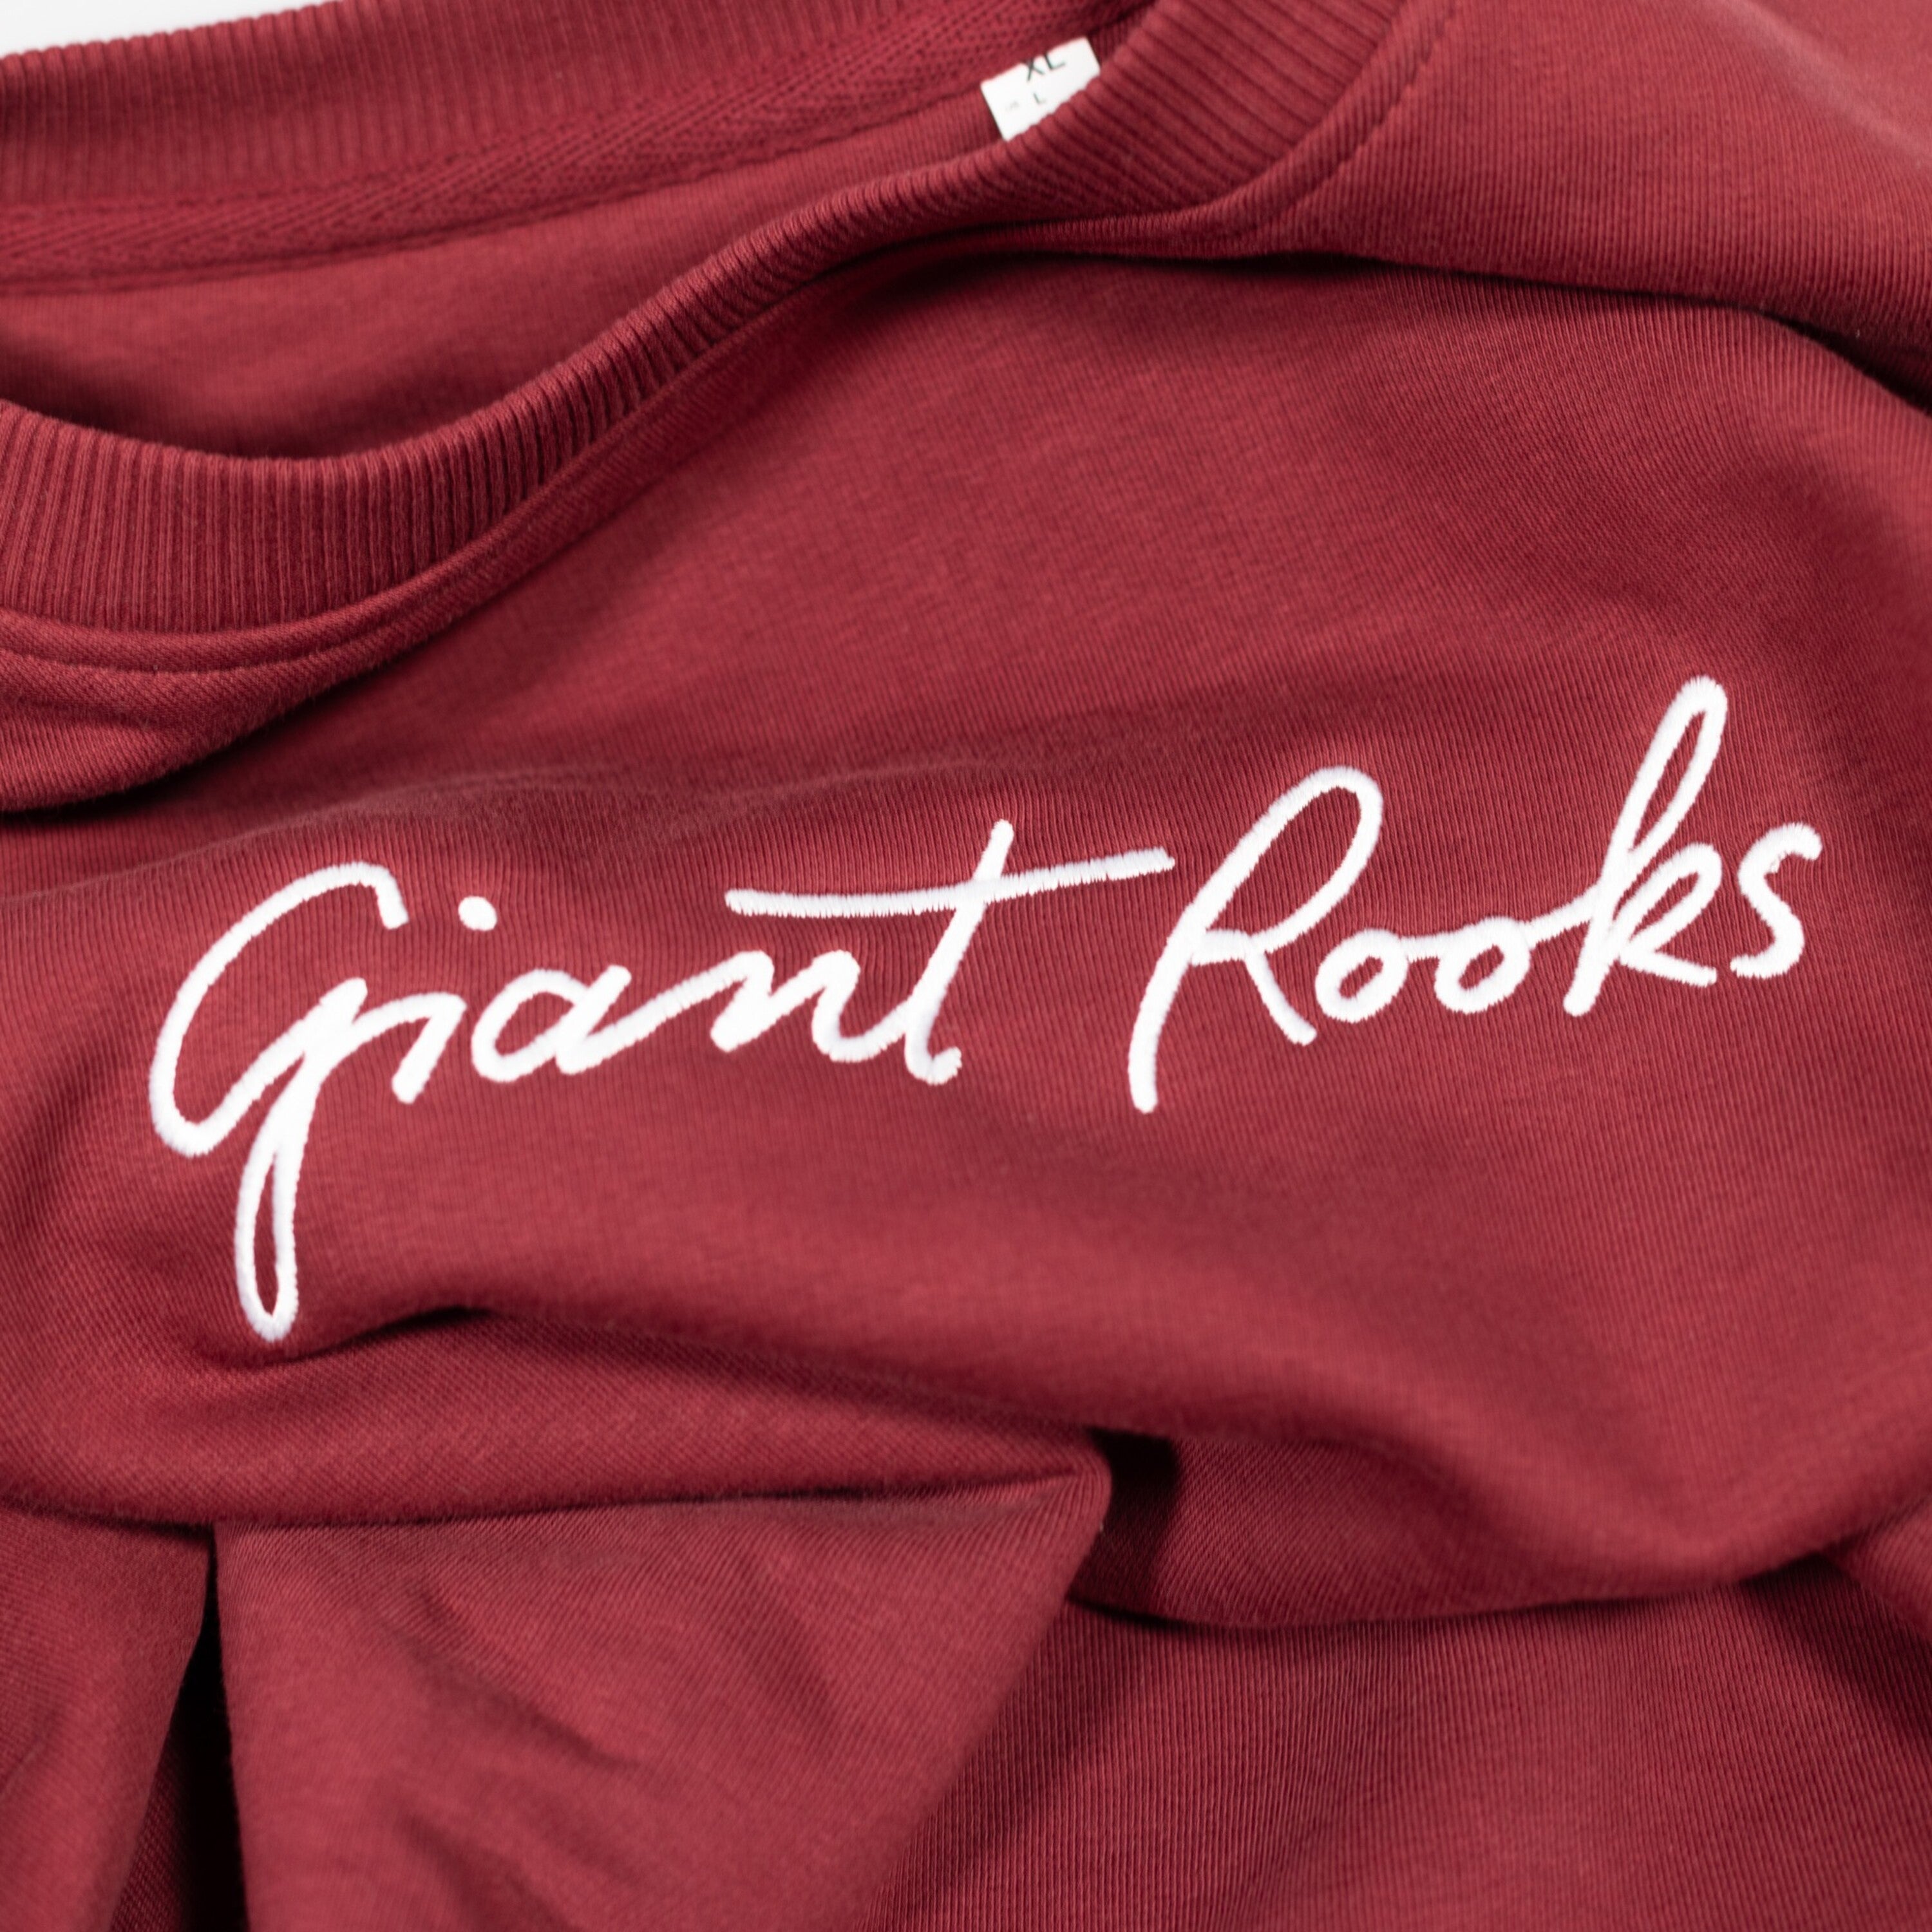 Giant Rooks - Giant Rooks Logo Crewneck